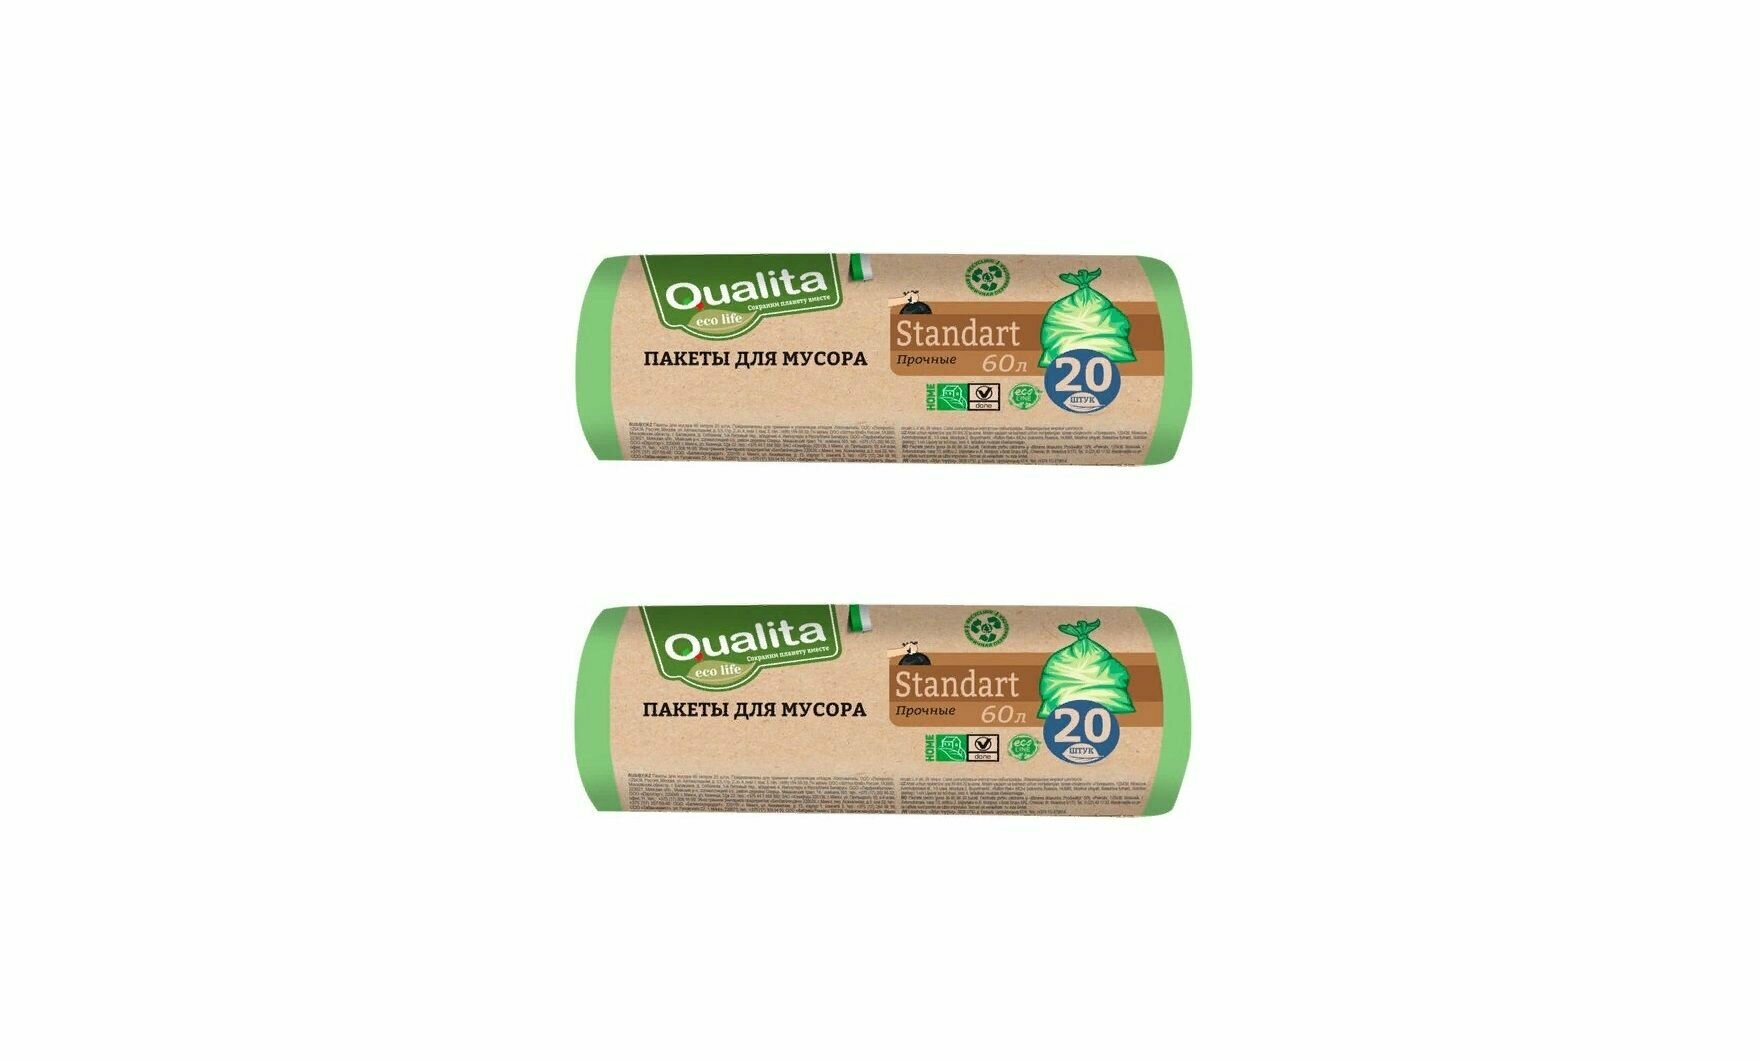 Qualita Пакеты для мусора Eco Life, 60л, 20 штук, 2 упаковки